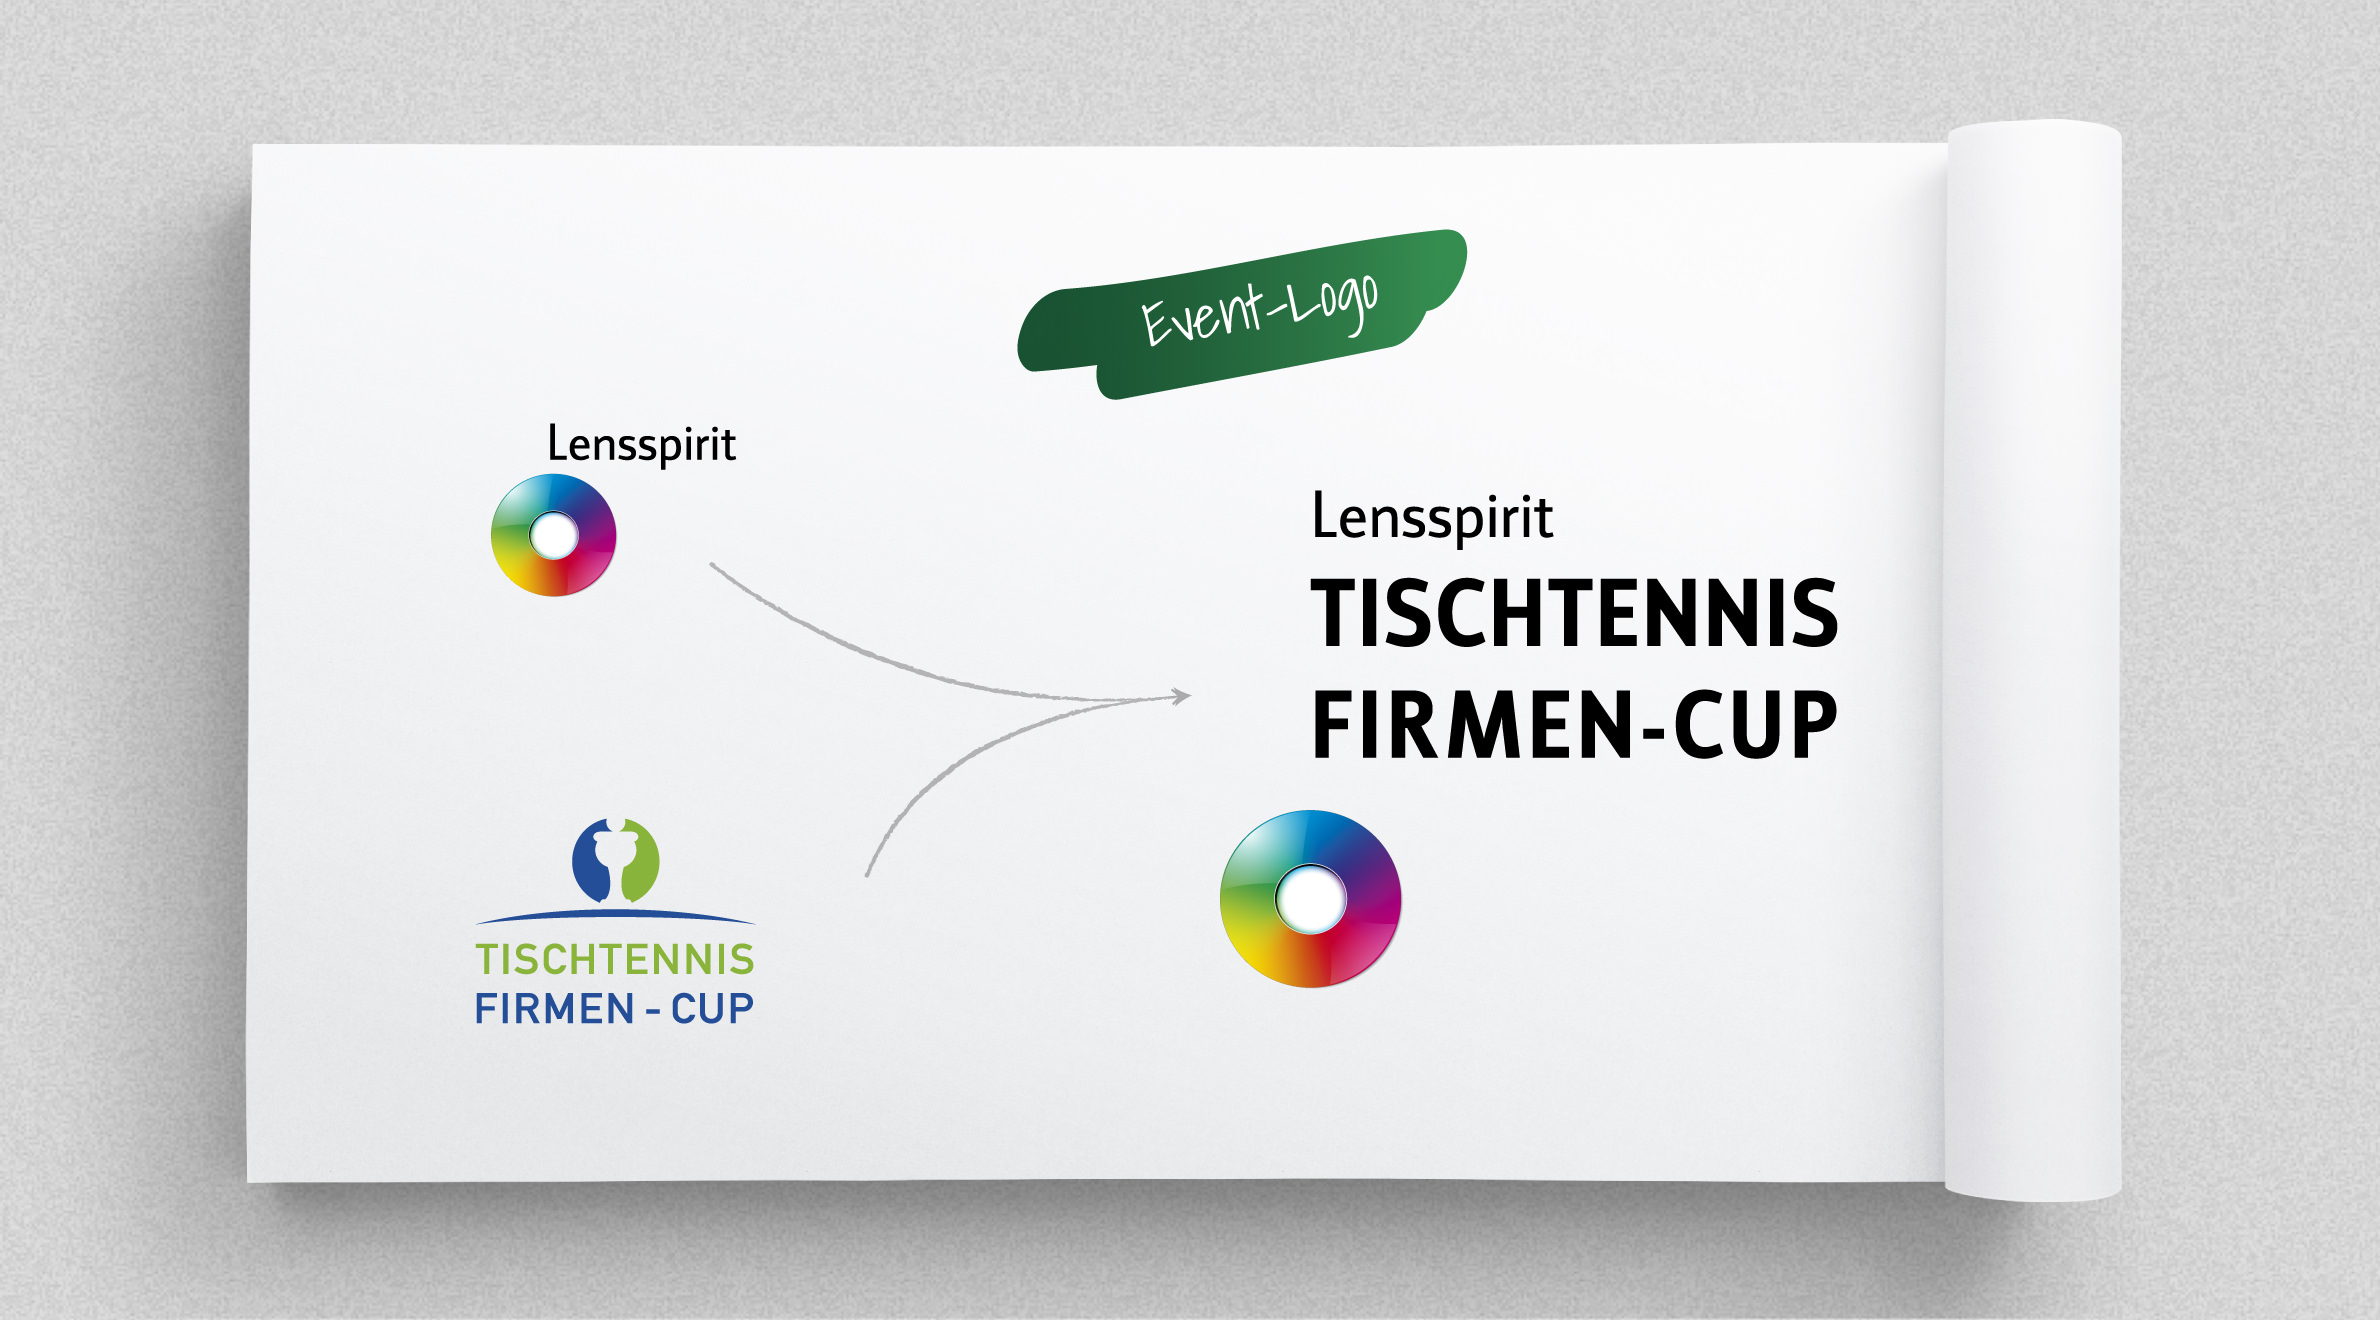 Lensspirit - Tischtennis Firmen-Cup, Logo - Entwicklung